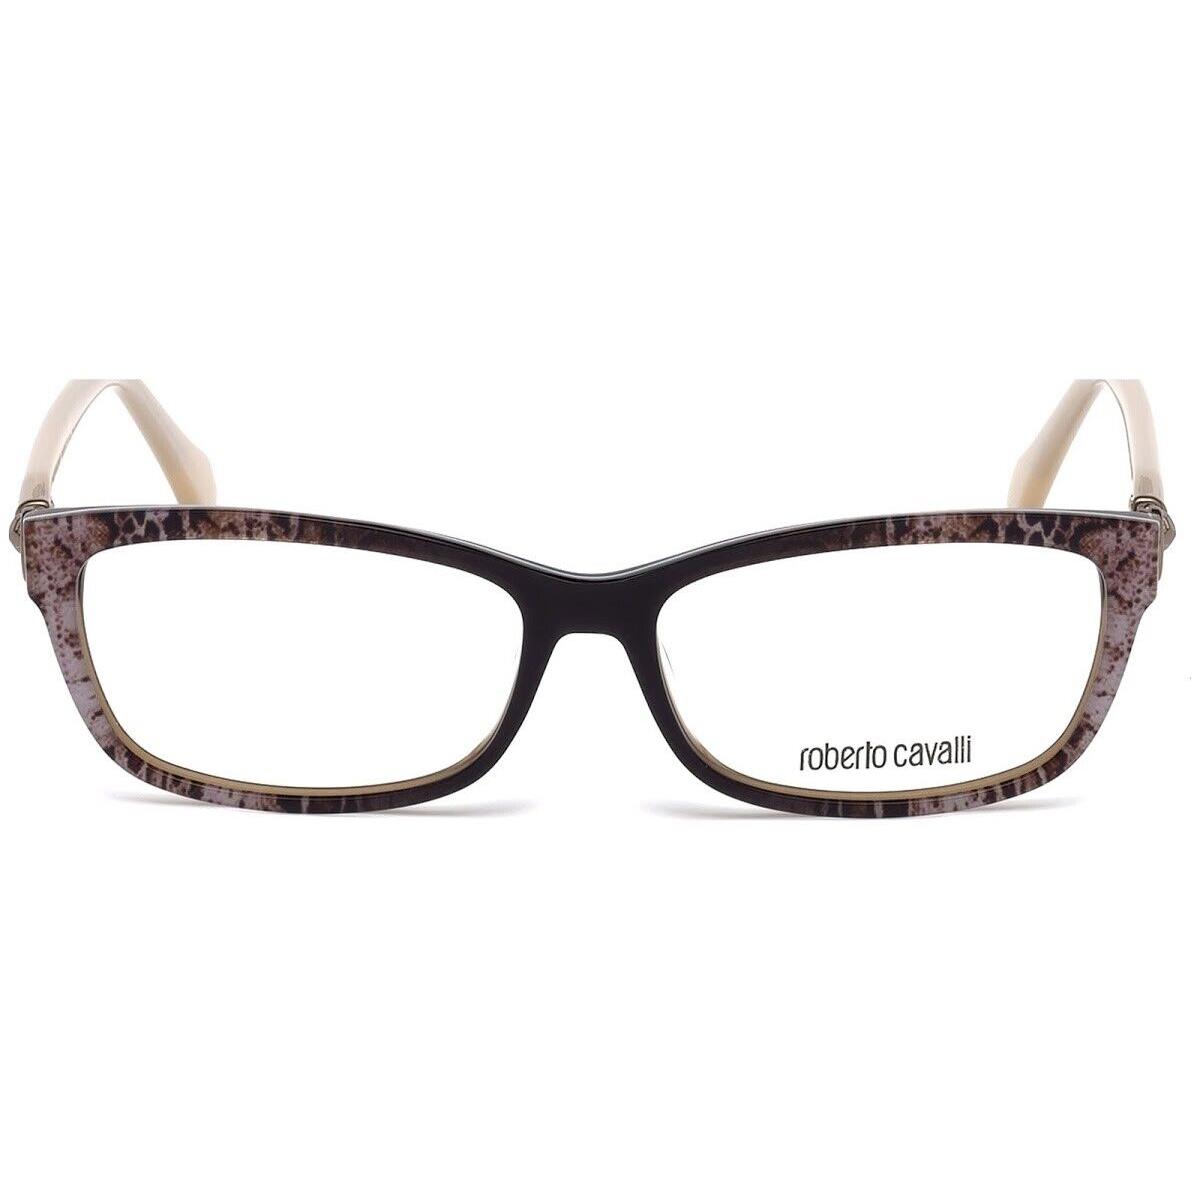 Roberto Cavalli Aulla RC5012 050 Brown Cheetah Optical Eyeglasses 54-14-130